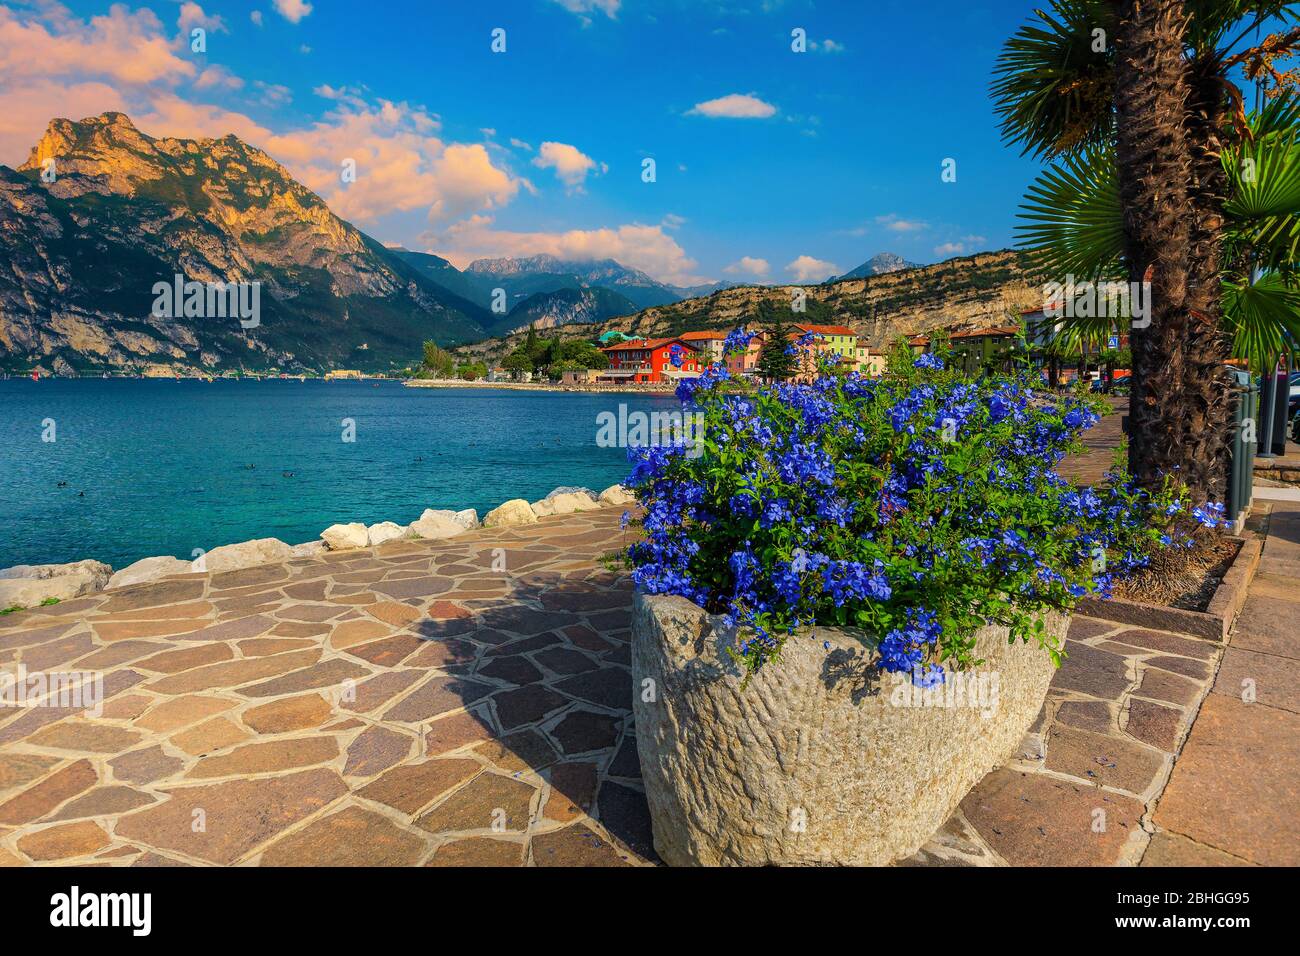 Atemberaubende gepflasterte und blumige Uferpromenade mit Palmen in Torbole Resort, Gardasee, Italien, Europa Stockfoto